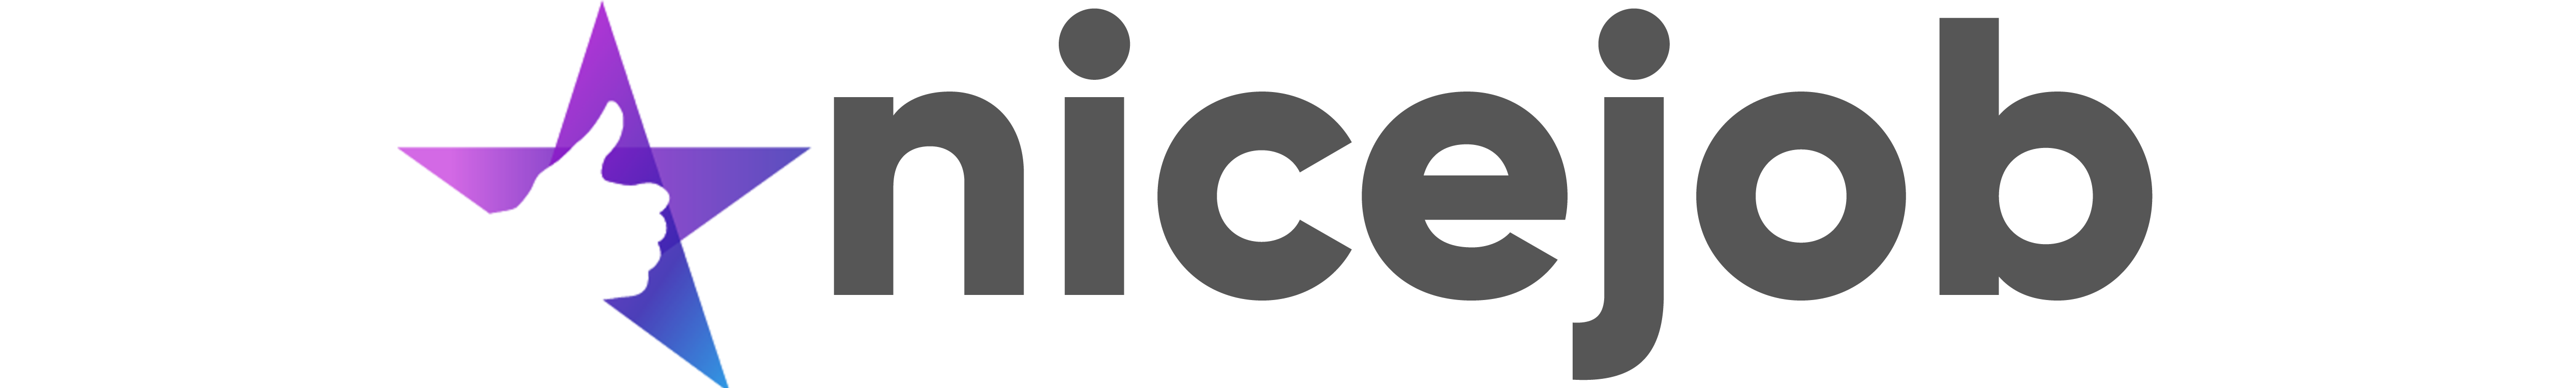 NiceJob-logo